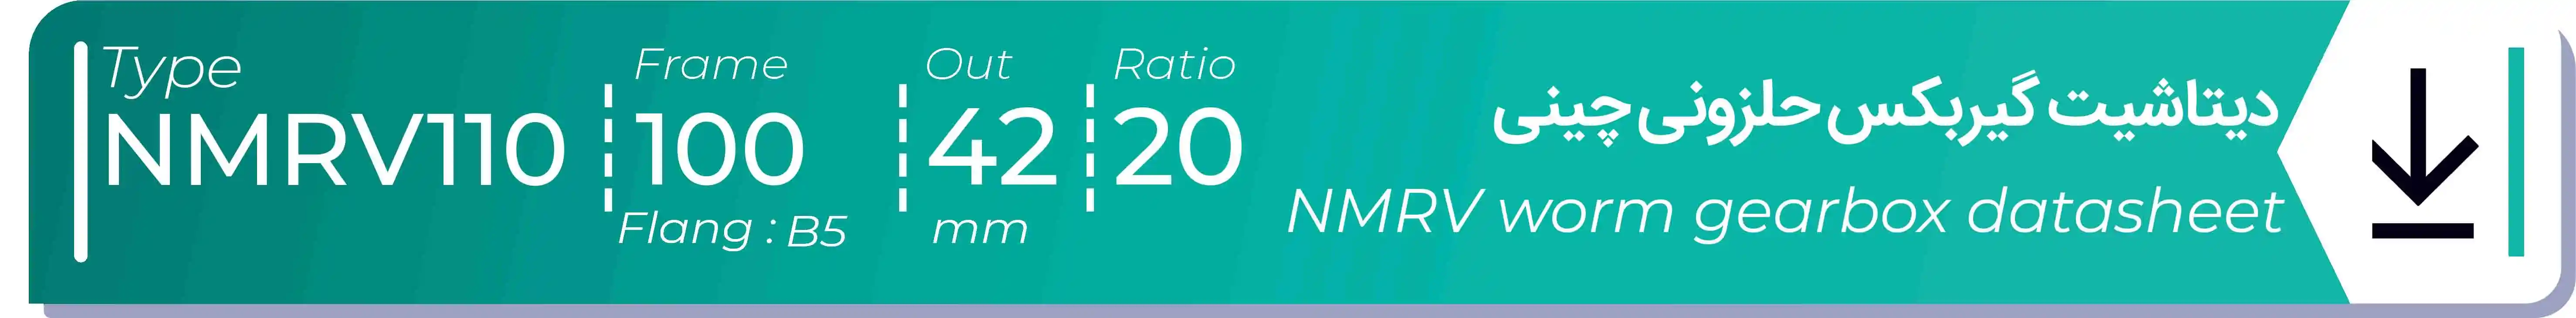  دیتاشیت و مشخصات فنی گیربکس حلزونی چینی   NMRV110  -  با خروجی 42- میلی متر و نسبت20 و فریم 100